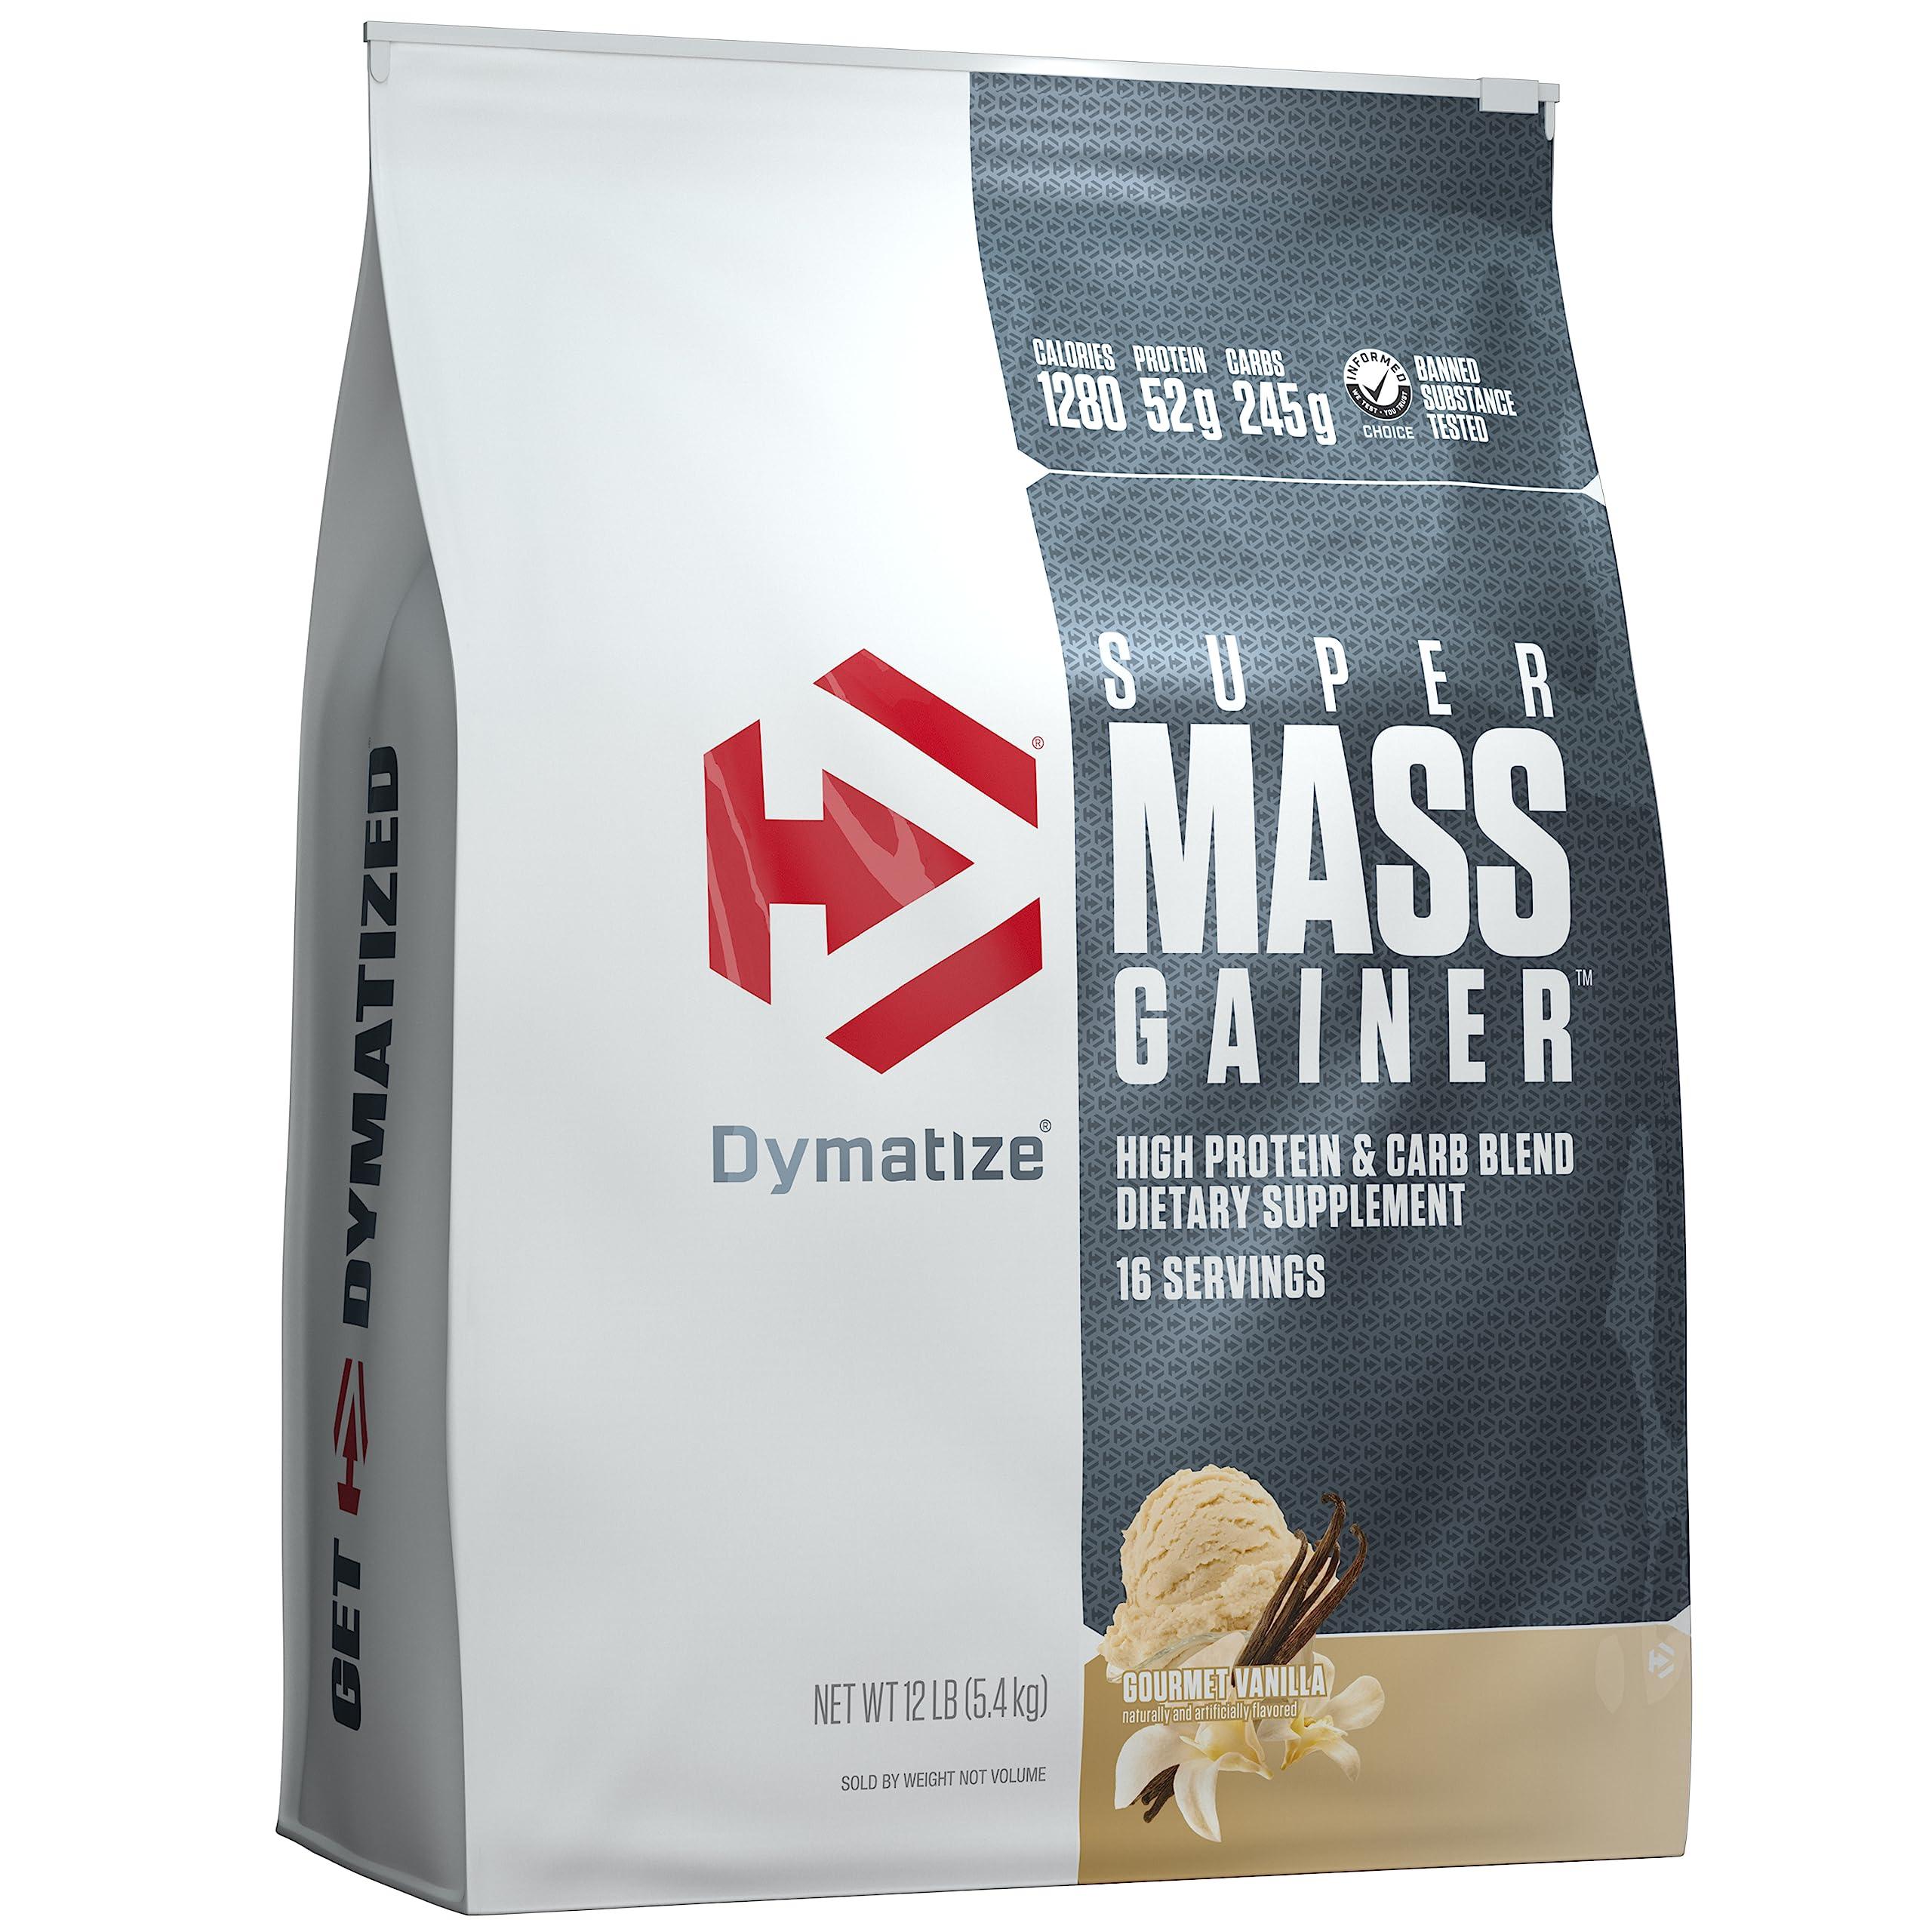 Dymatize Super Mass Gainer, 12 lbs - Wellness Shoppee